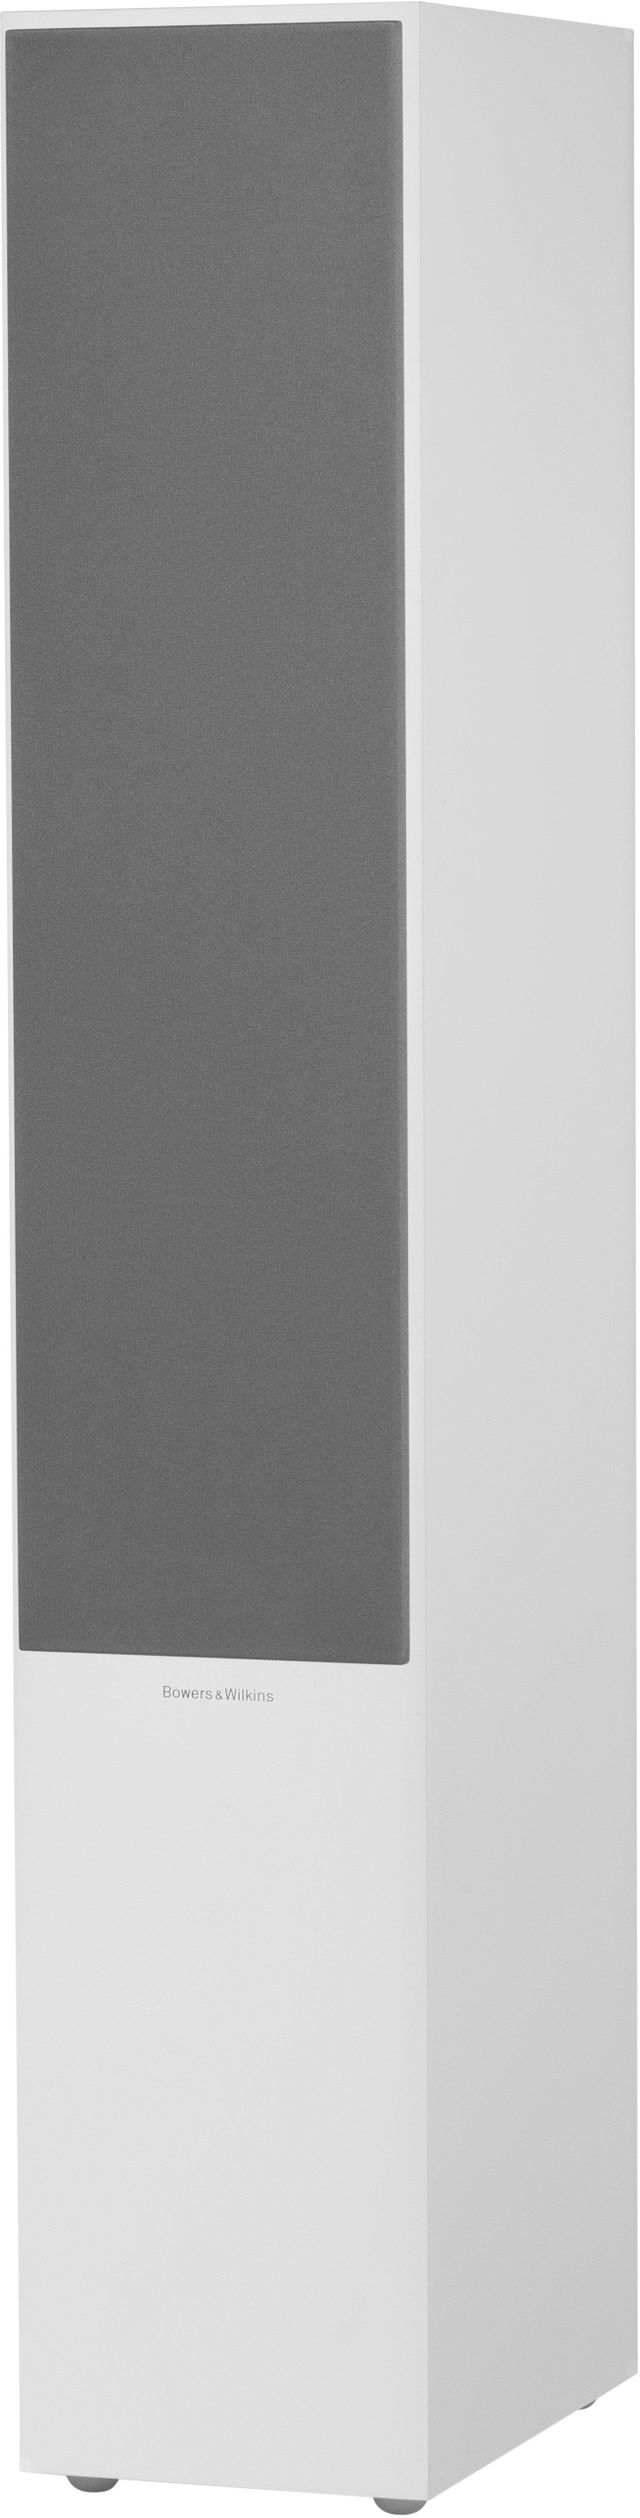 Bowers & Wilkins Gloss Black 704 S2 Floorstanding Speaker 3